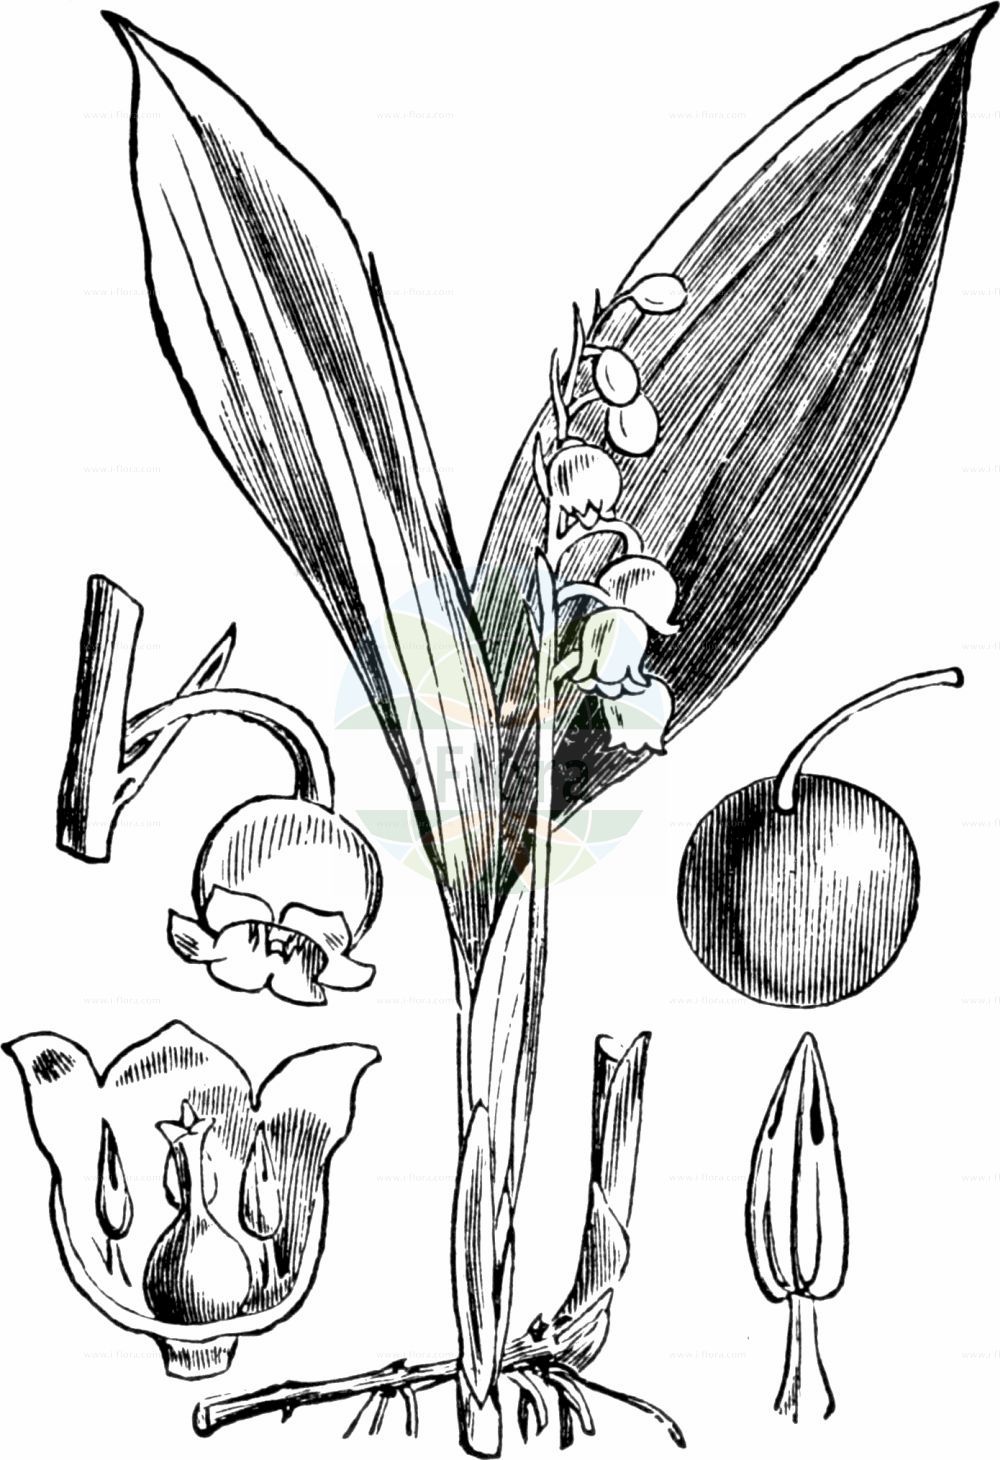 Historische Abbildung von Convallaria majalis (Maiglöckchen - Lily-of-The-Valley). Das Bild zeigt Blatt, Bluete, Frucht und Same. ---- Historical Drawing of Convallaria majalis (Maiglöckchen - Lily-of-The-Valley). The image is showing leaf, flower, fruit and seed.(Convallaria majalis,Maiglöckchen,Lily-of-The-Valley,Convallaria bracteata,Convallaria fragrans,Convallaria latifolia,Convallaria linnaei,Convallaria majalis,Convallaria mappii,Convallaria scaposa,Convallaria transcaucasica,Lilium convallium,Lilium-convallium majale,Polygonatum majale,Maigloeckchen,Maiblume,Lily-of-The-Valley,European Lily Of The Valley,May Lily,Convallaria,Maiglöckchen,Lily-of-The-Valley,Asparagaceae,Spargelgewächse,Asparagus family,Blatt,Bluete,Frucht,Same,leaf,flower,fruit,seed,Fitch et al. (1880))